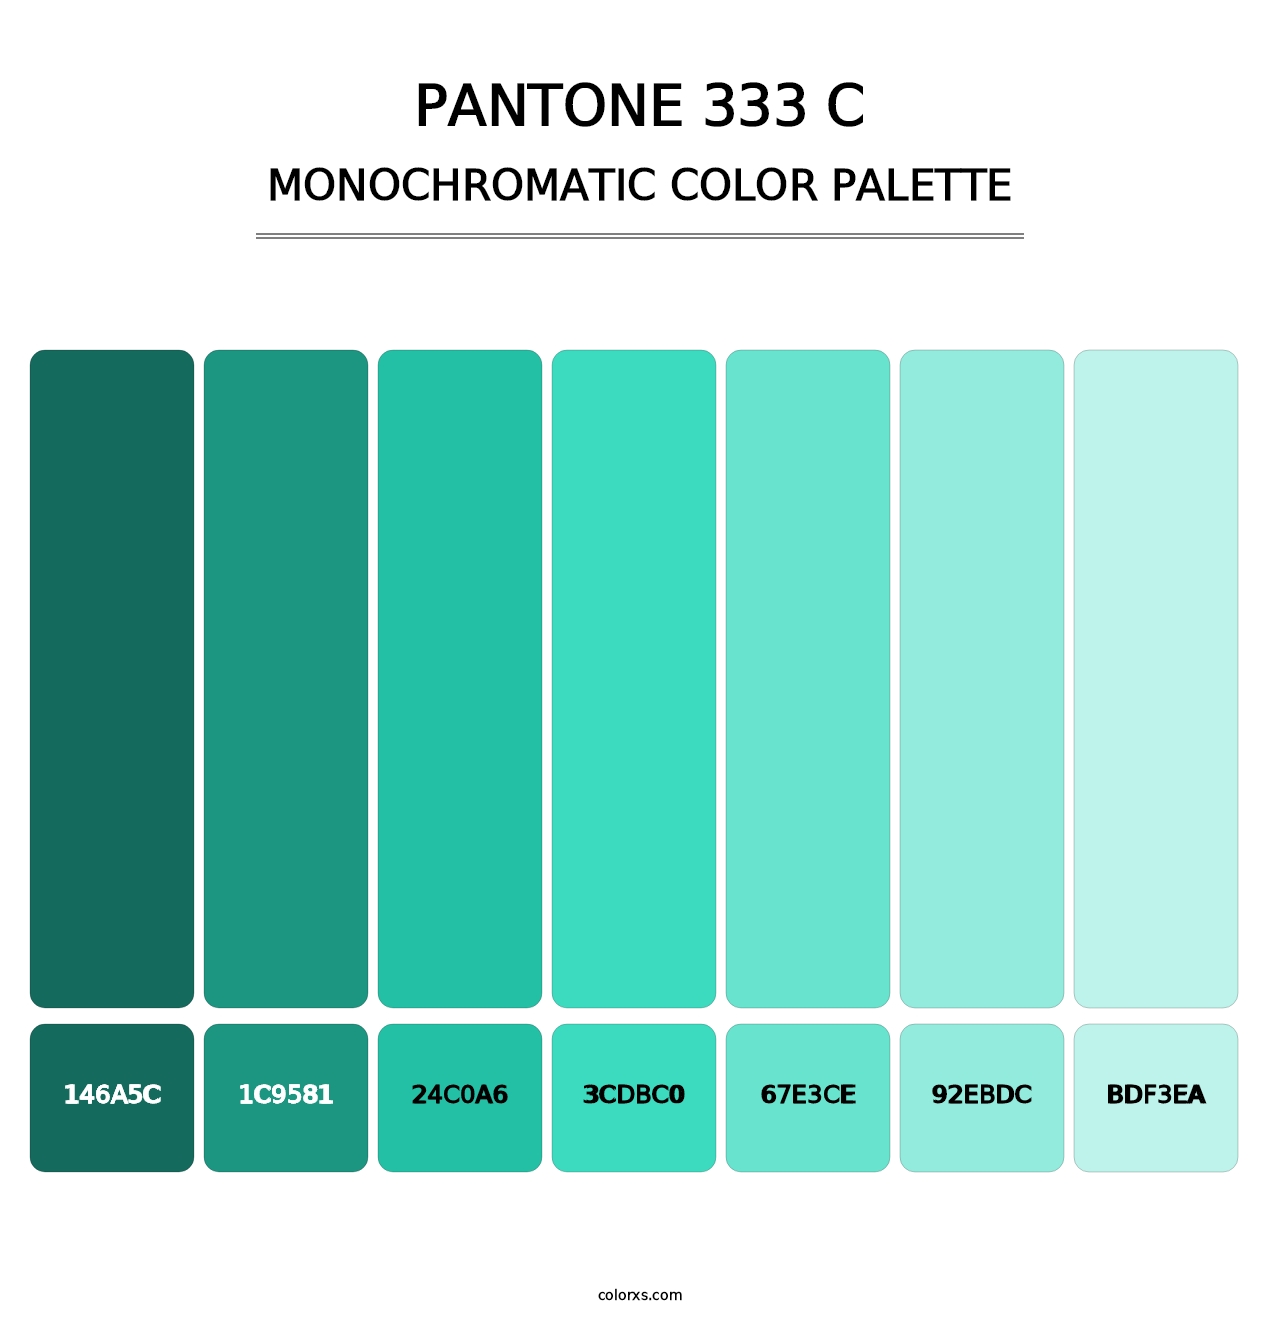 PANTONE 333 C - Monochromatic Color Palette